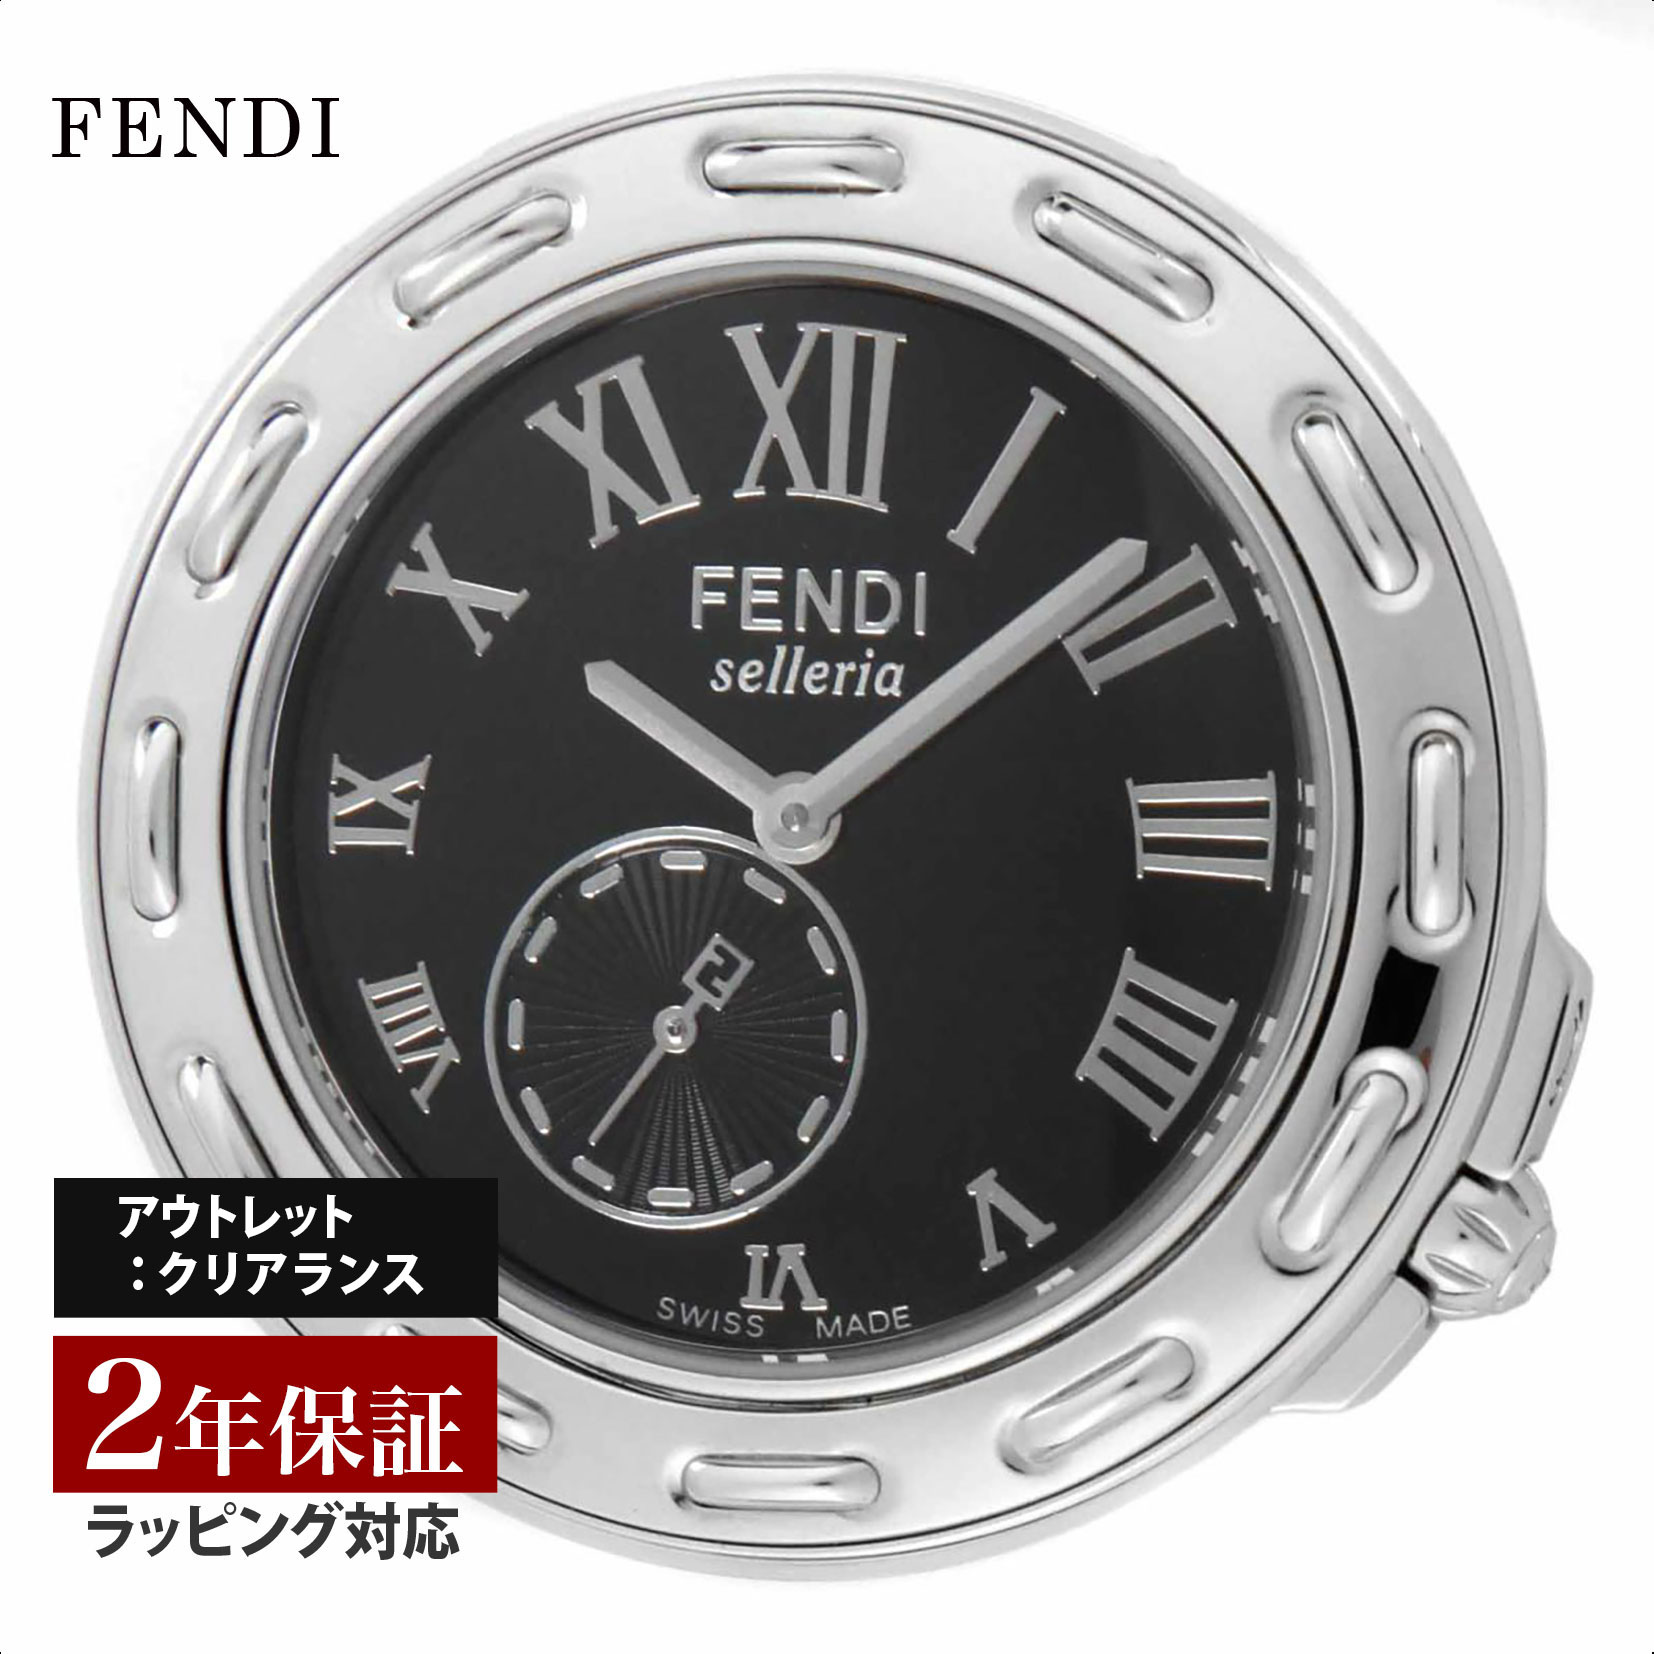 【クリアランスSALE】 FENDI フェンディ セレリア クォーツ レディース グレー F81031H 時計 腕時計 高級腕時計 ブランド 